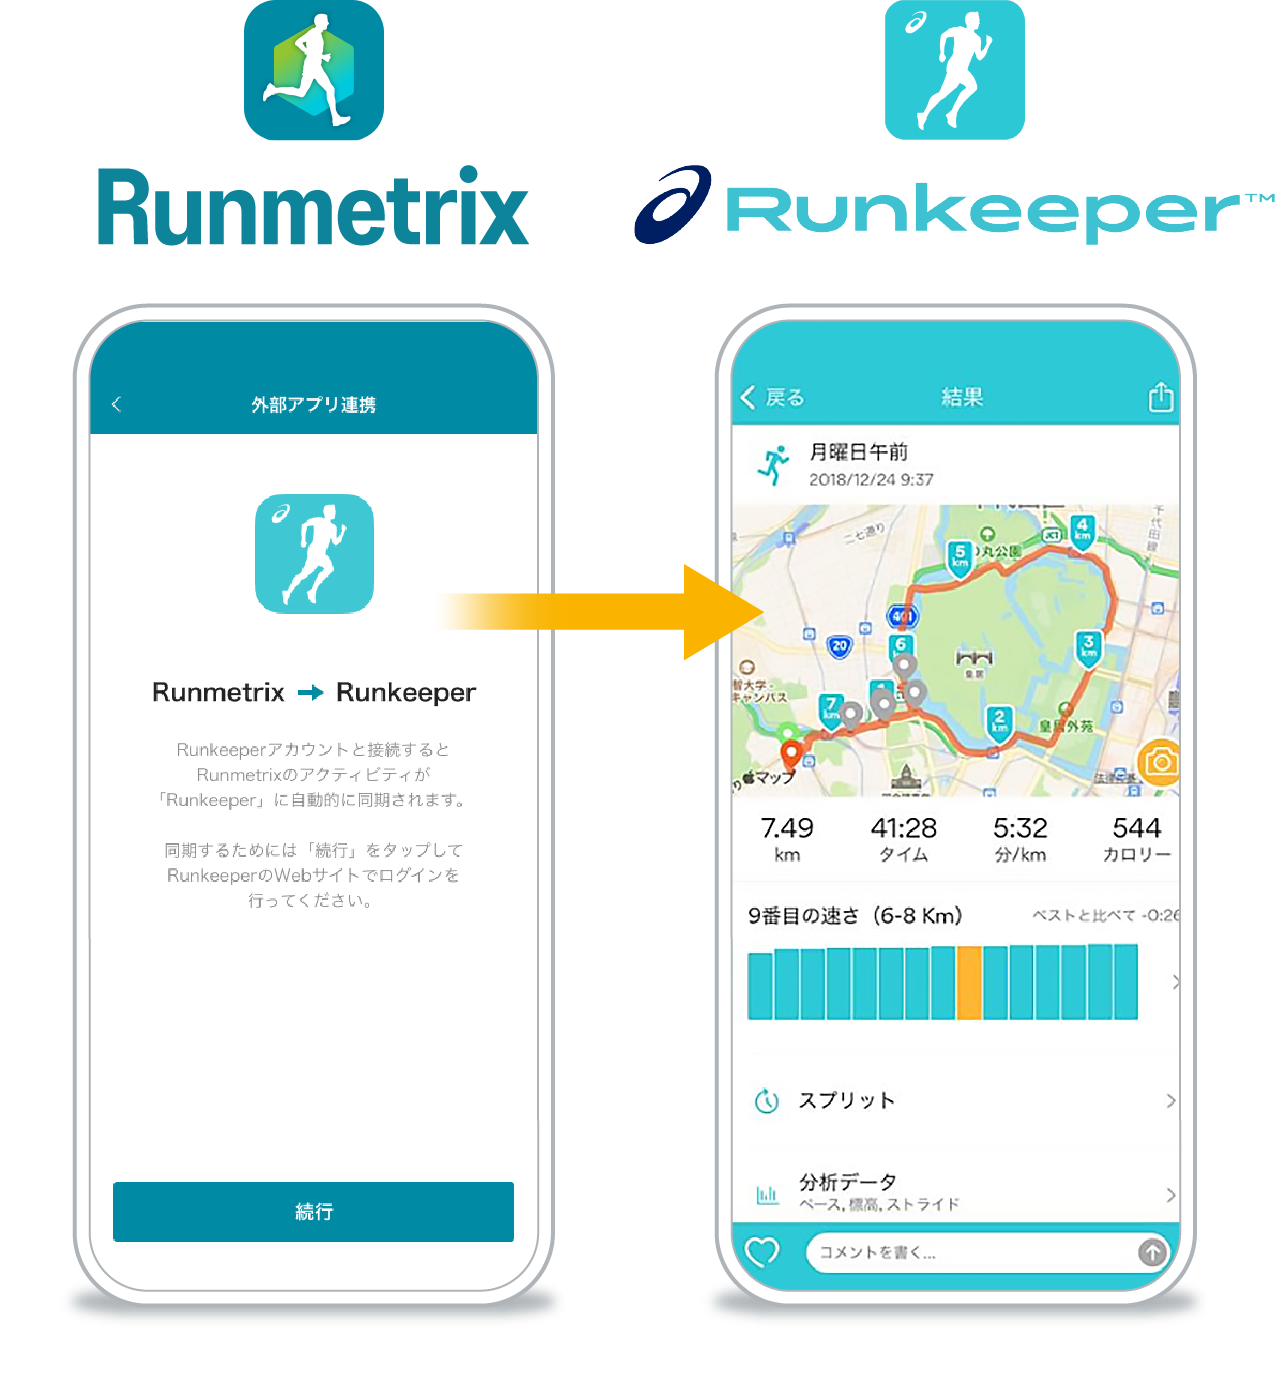 Runmetrix → Runkeeper